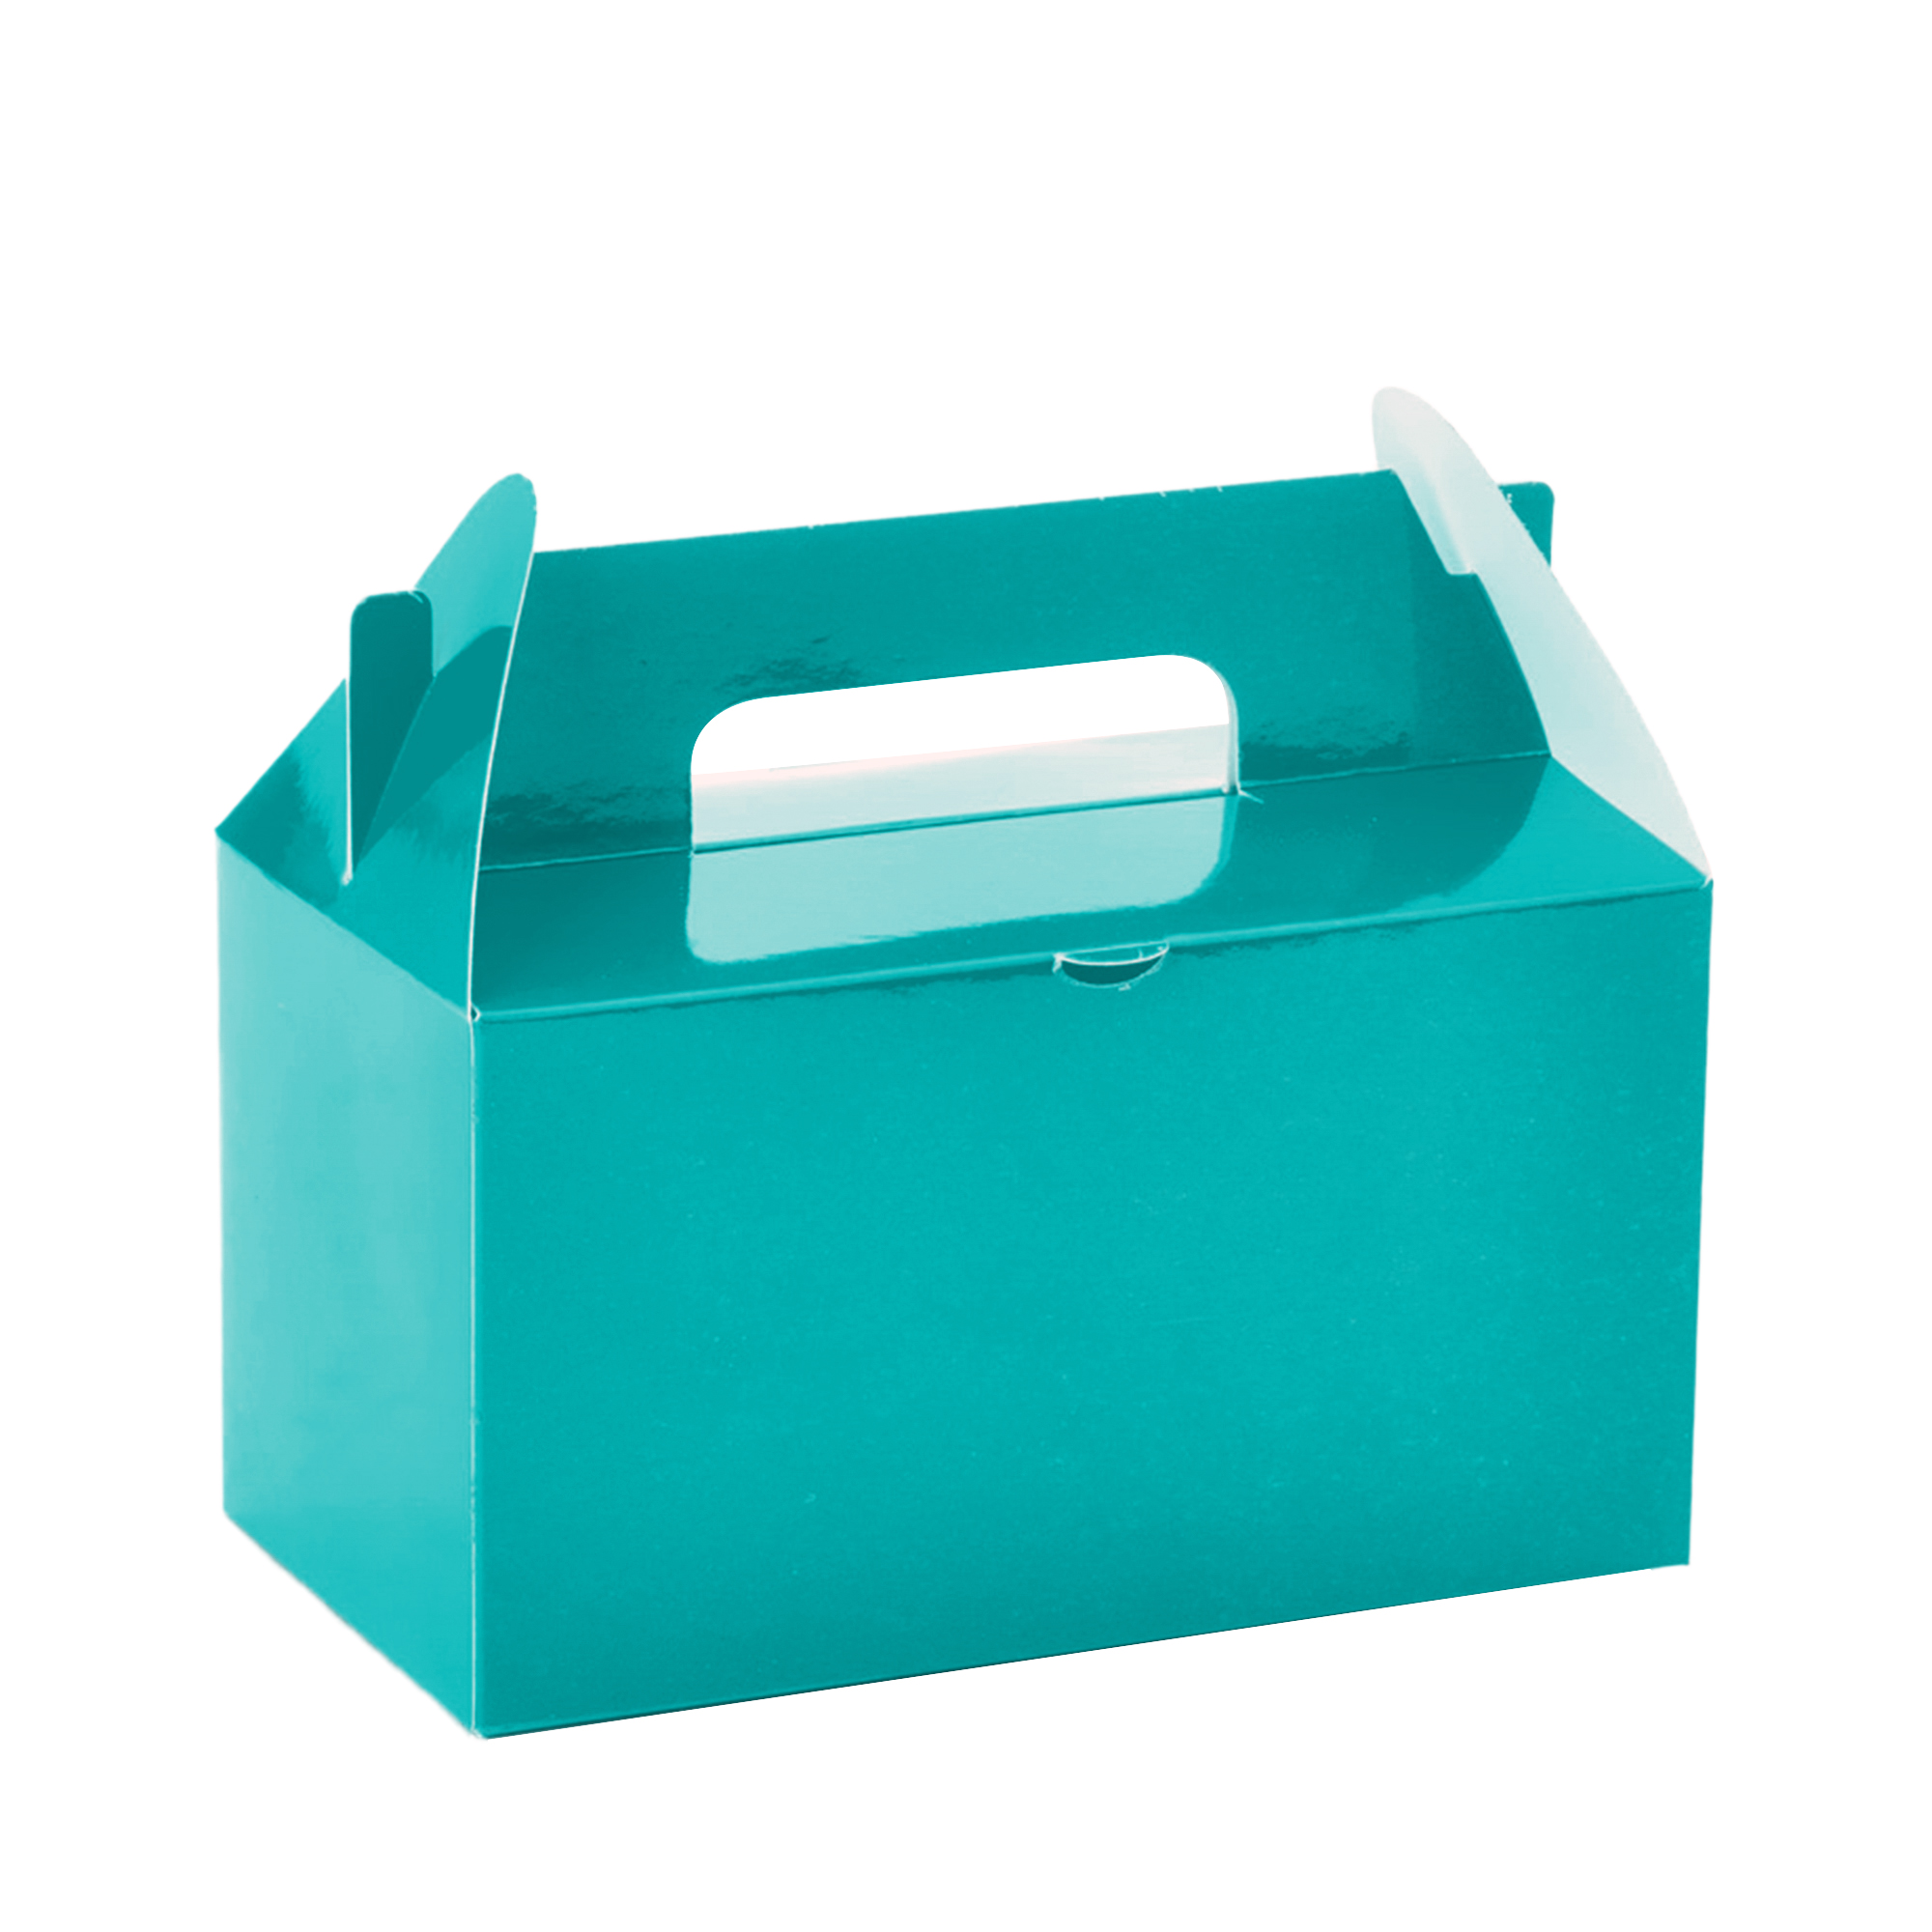 Takeout Box 12pcs/bag - Turquoise